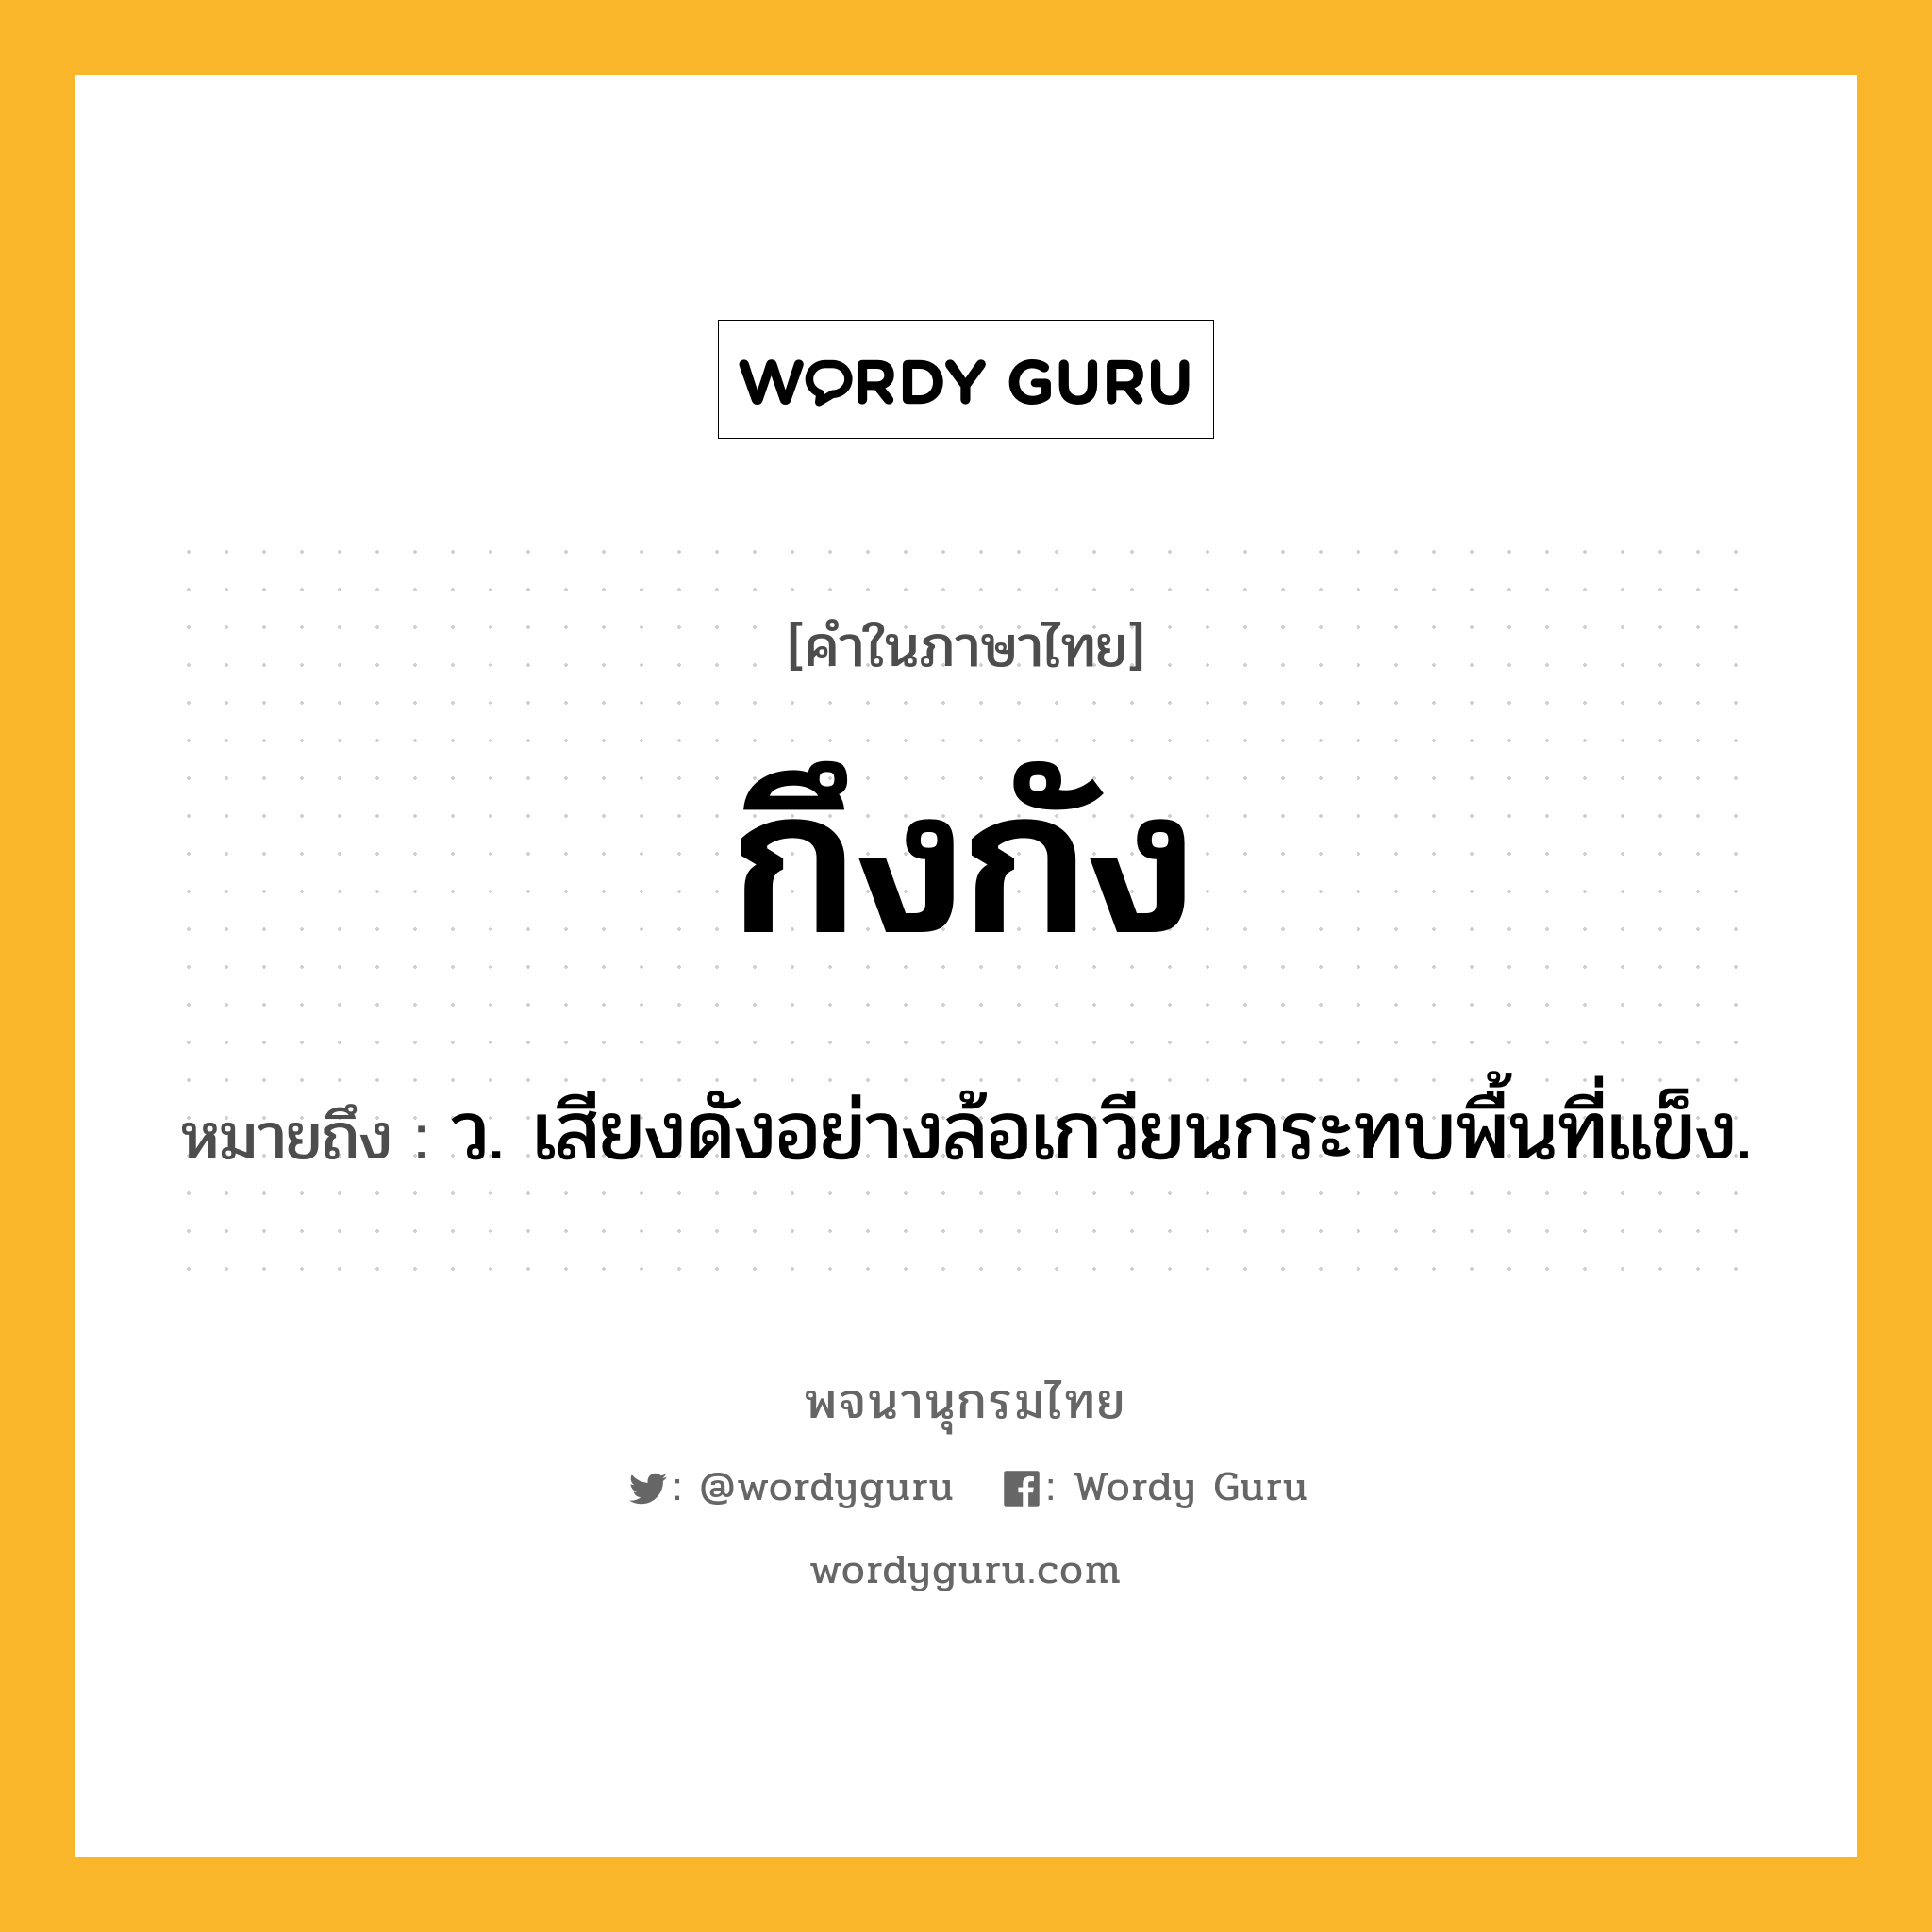 กึงกัง หมายถึงอะไร?, คำในภาษาไทย กึงกัง หมายถึง ว. เสียงดังอย่างล้อเกวียนกระทบพื้นที่แข็ง.